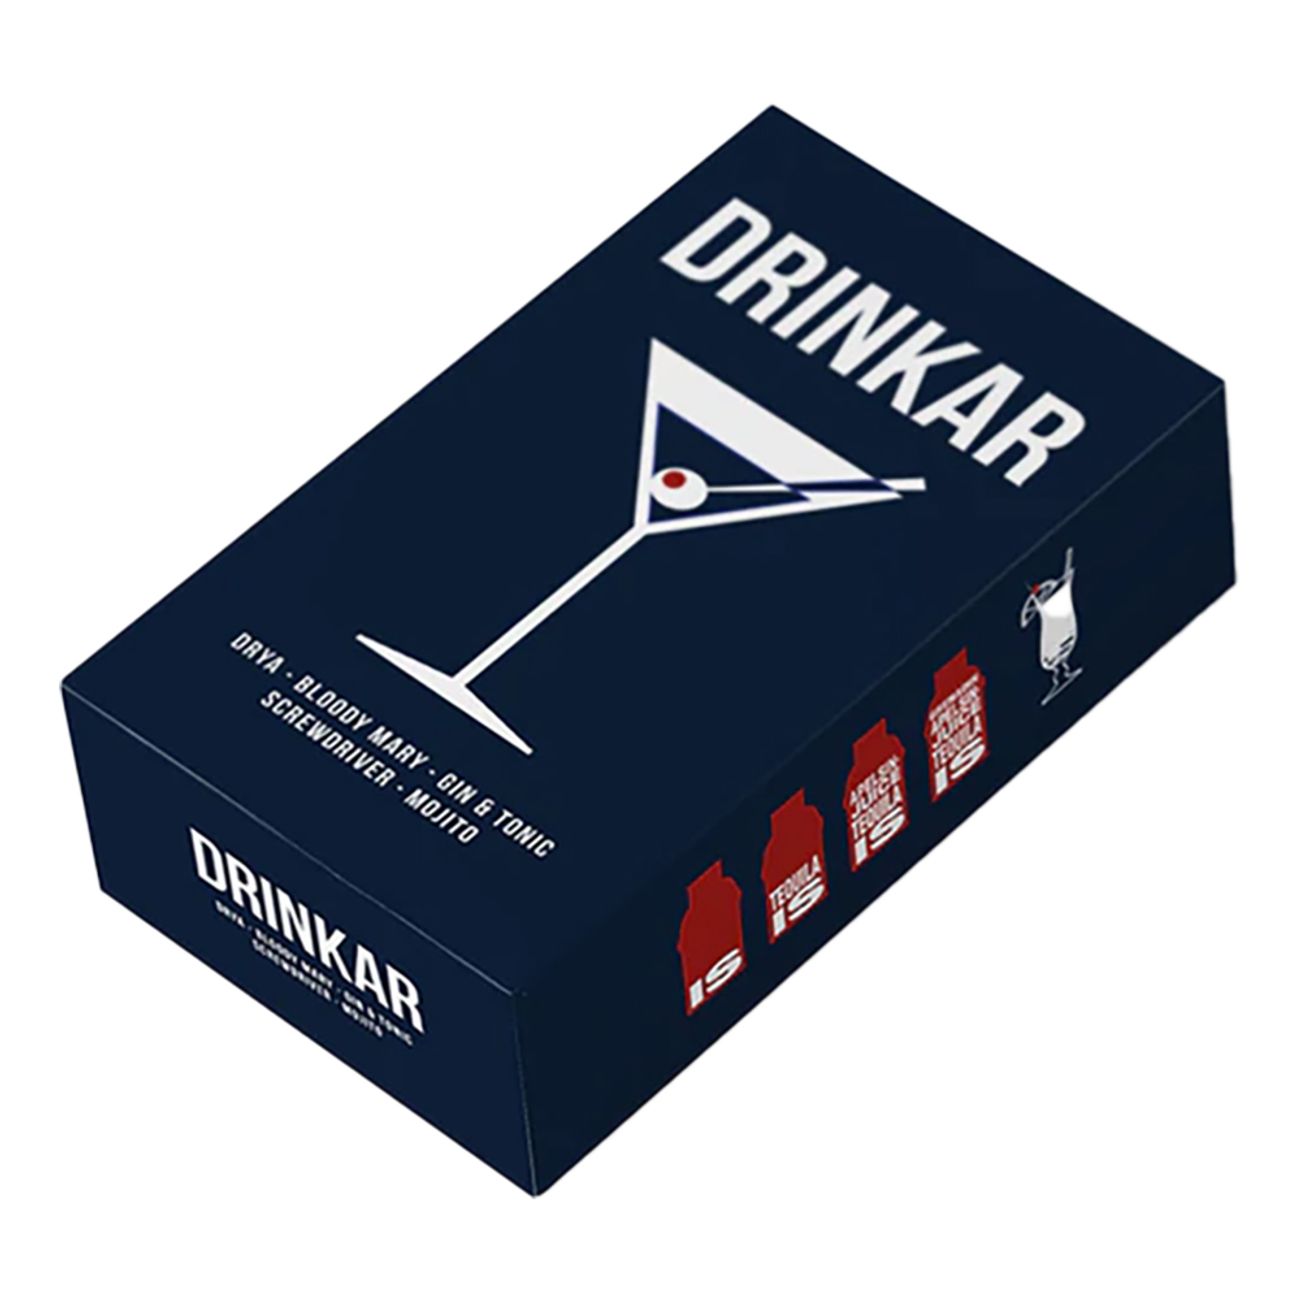 drinkar-recept-box-85974-1